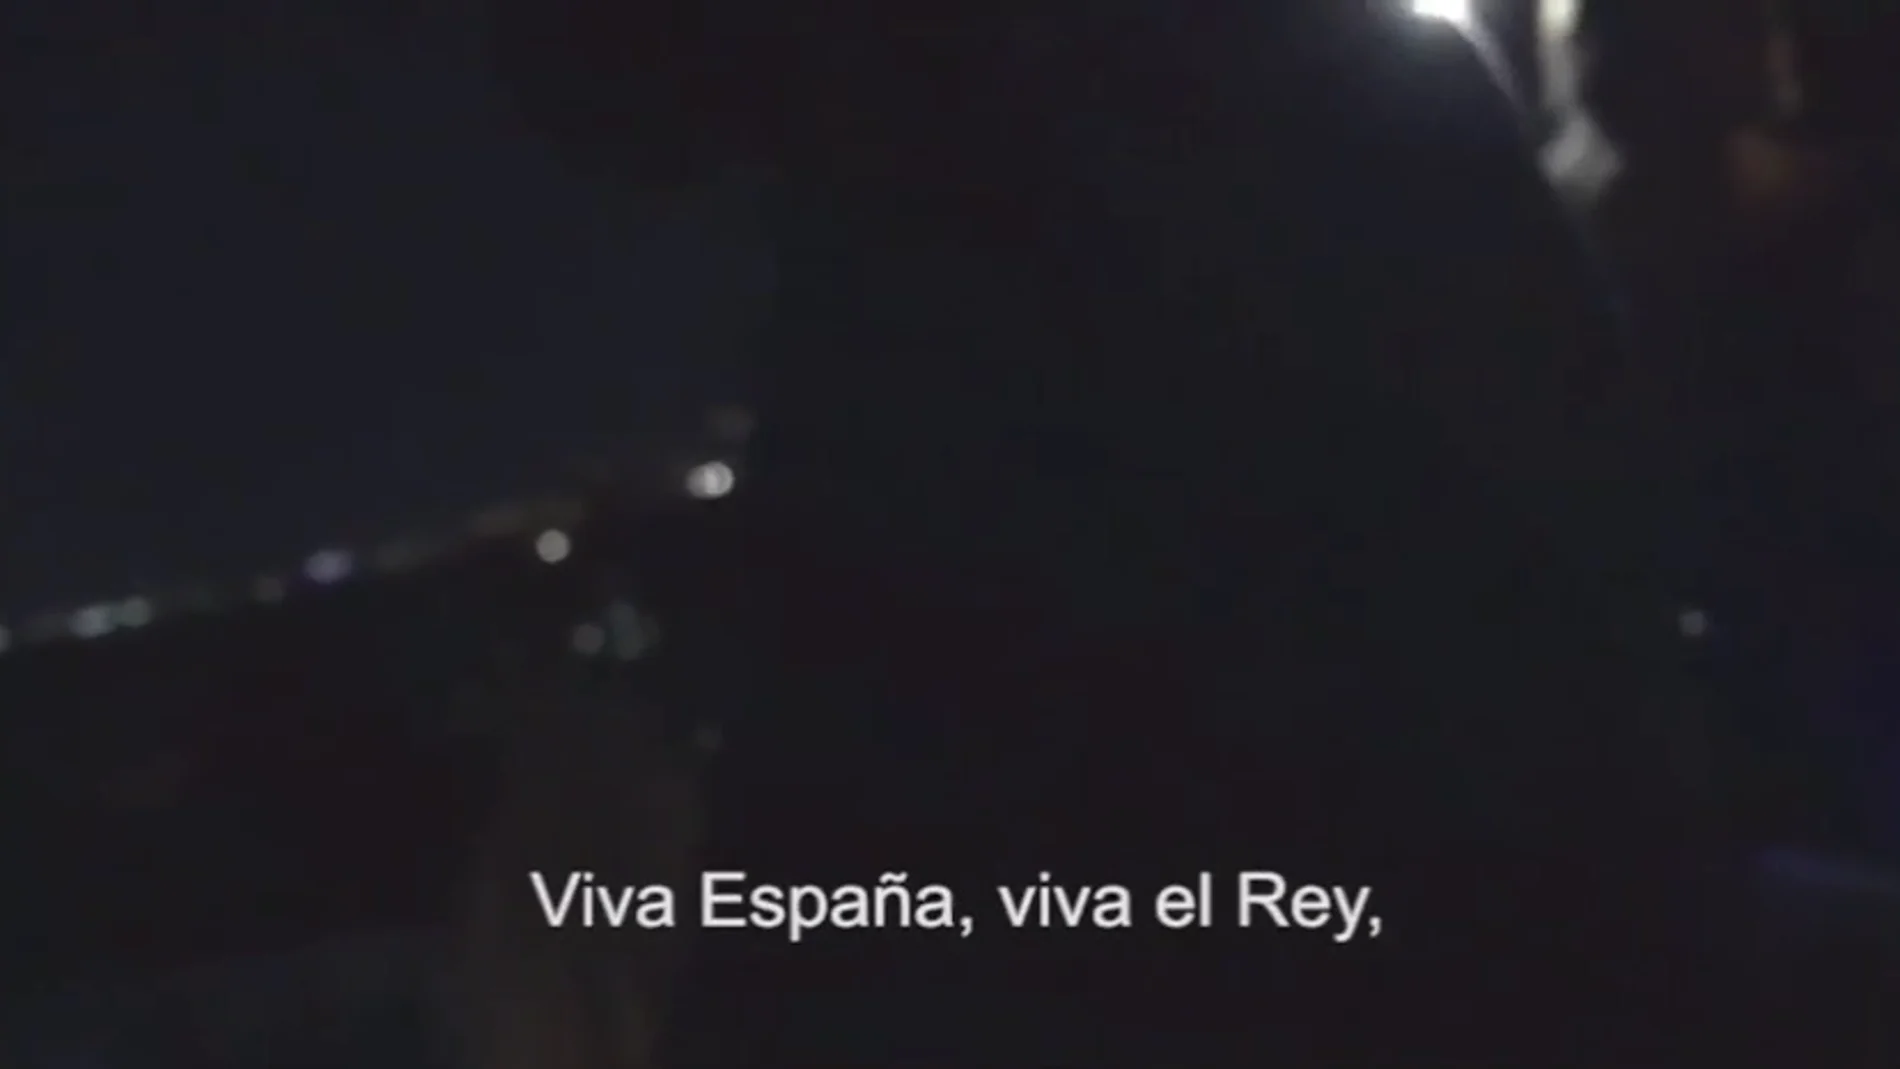 Los vecinos de la música de Manolo Escobar en Barcelona vuelven con el himno de la Guardia Civil: "Viva España, viva el rey, viva el orden y la Ley"